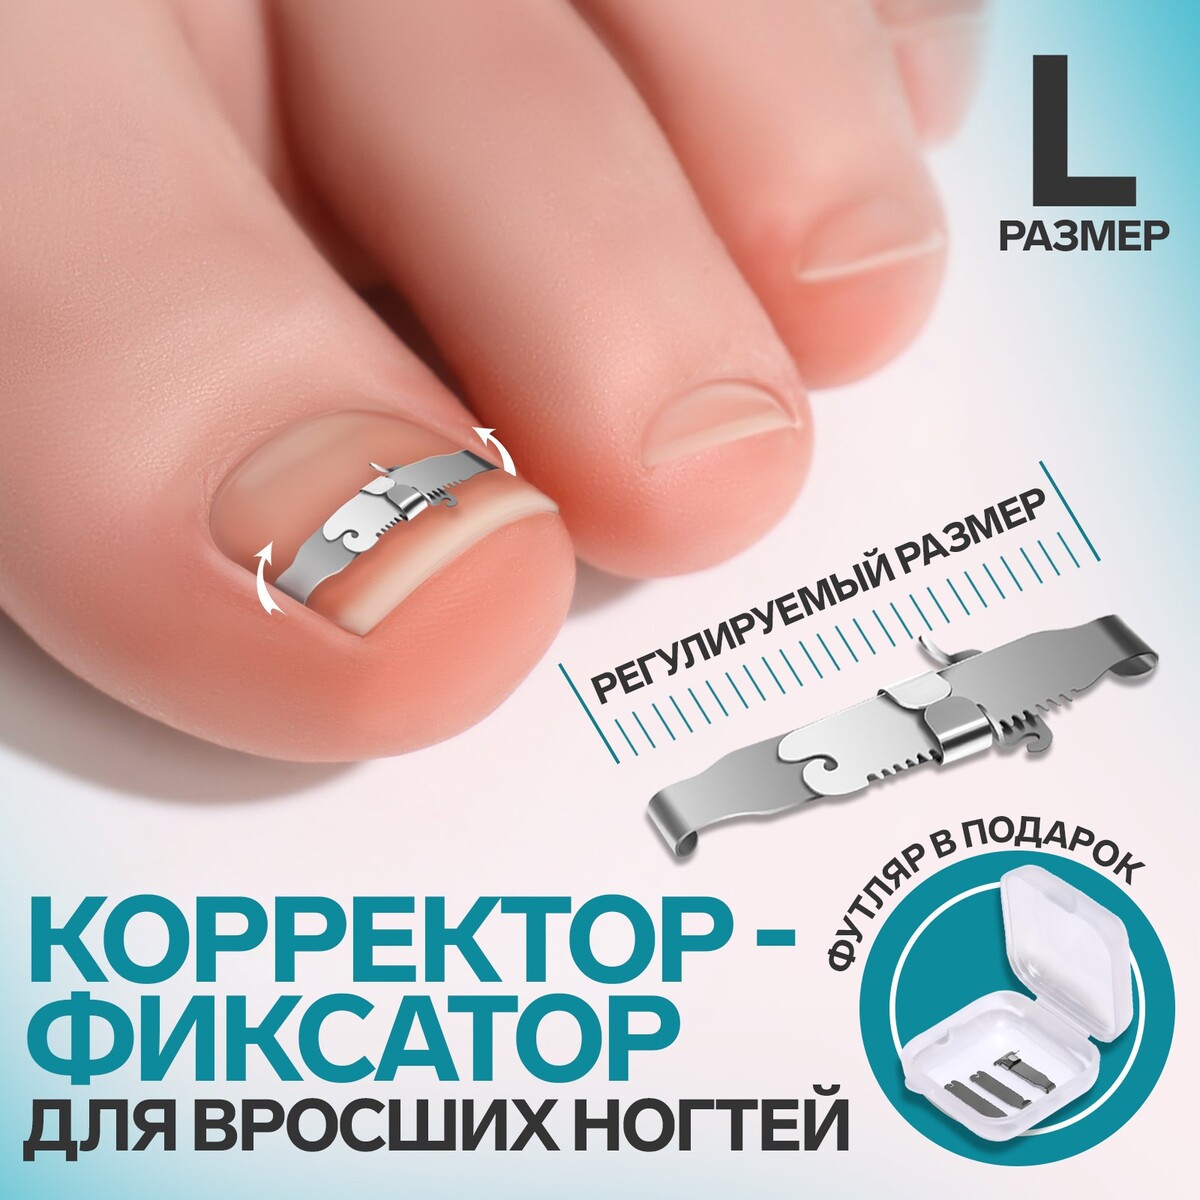 Корректор-фиксатор для вросшего ногтя, размер l, в пластиковом футляре, цвет серебристый спот корректор против воспалений 15 г